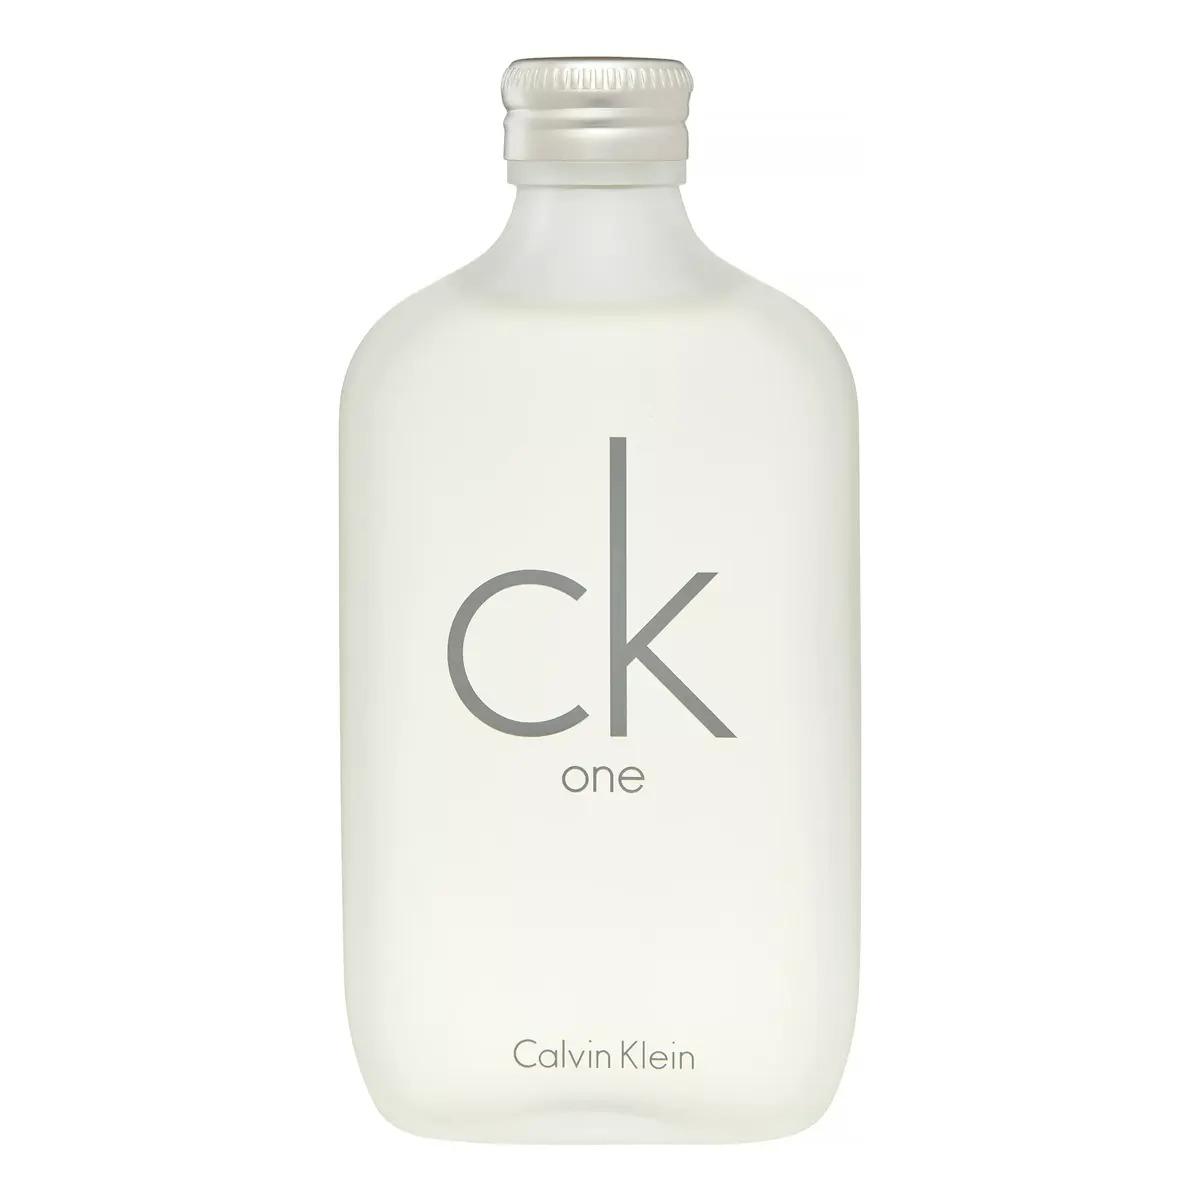 Calvin Klein CK One Eau De Toilette EDT Perfume Cologne for $34.98